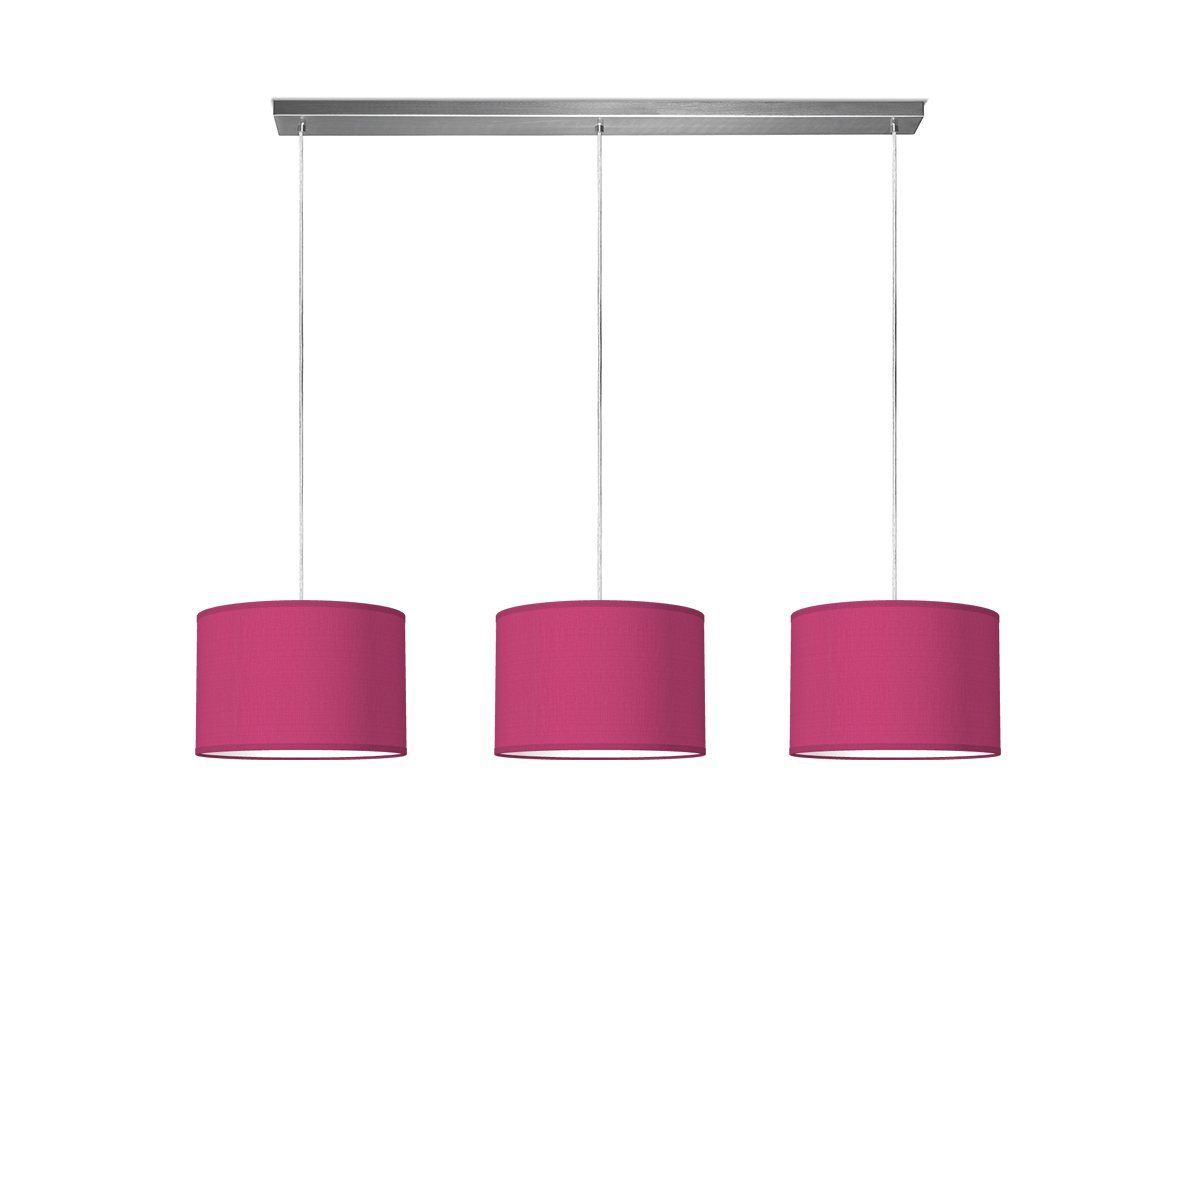 Light depot - hanglamp beam 3 bling Ø 30 cm - roze - Outlet